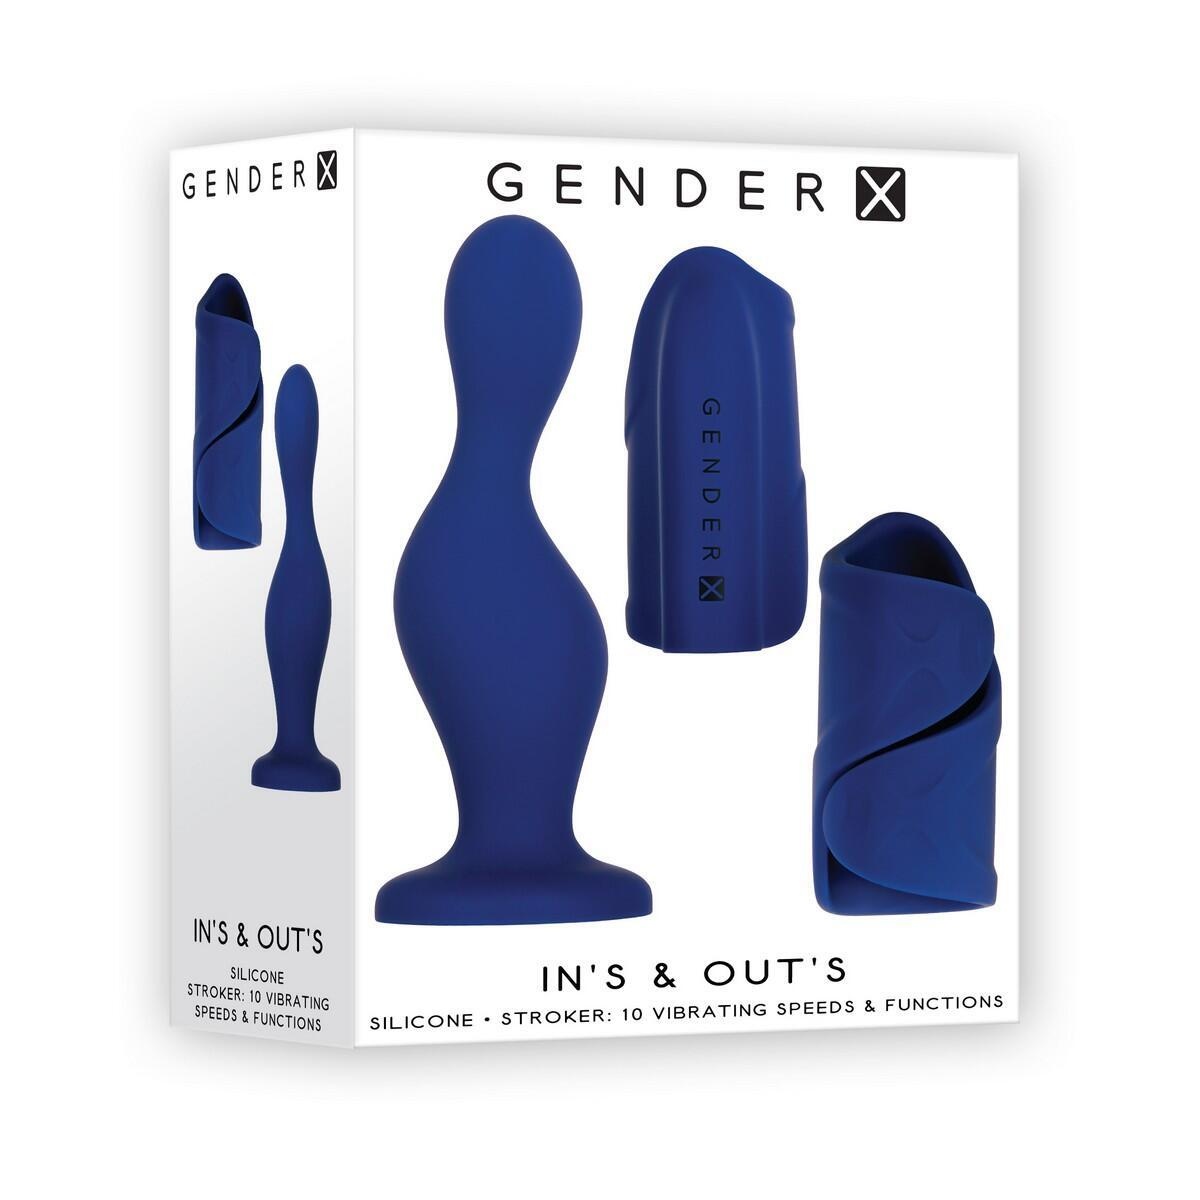 Набор с анальным стимулятором и мастурбатором Evolved Gender X In's & Out's, синий